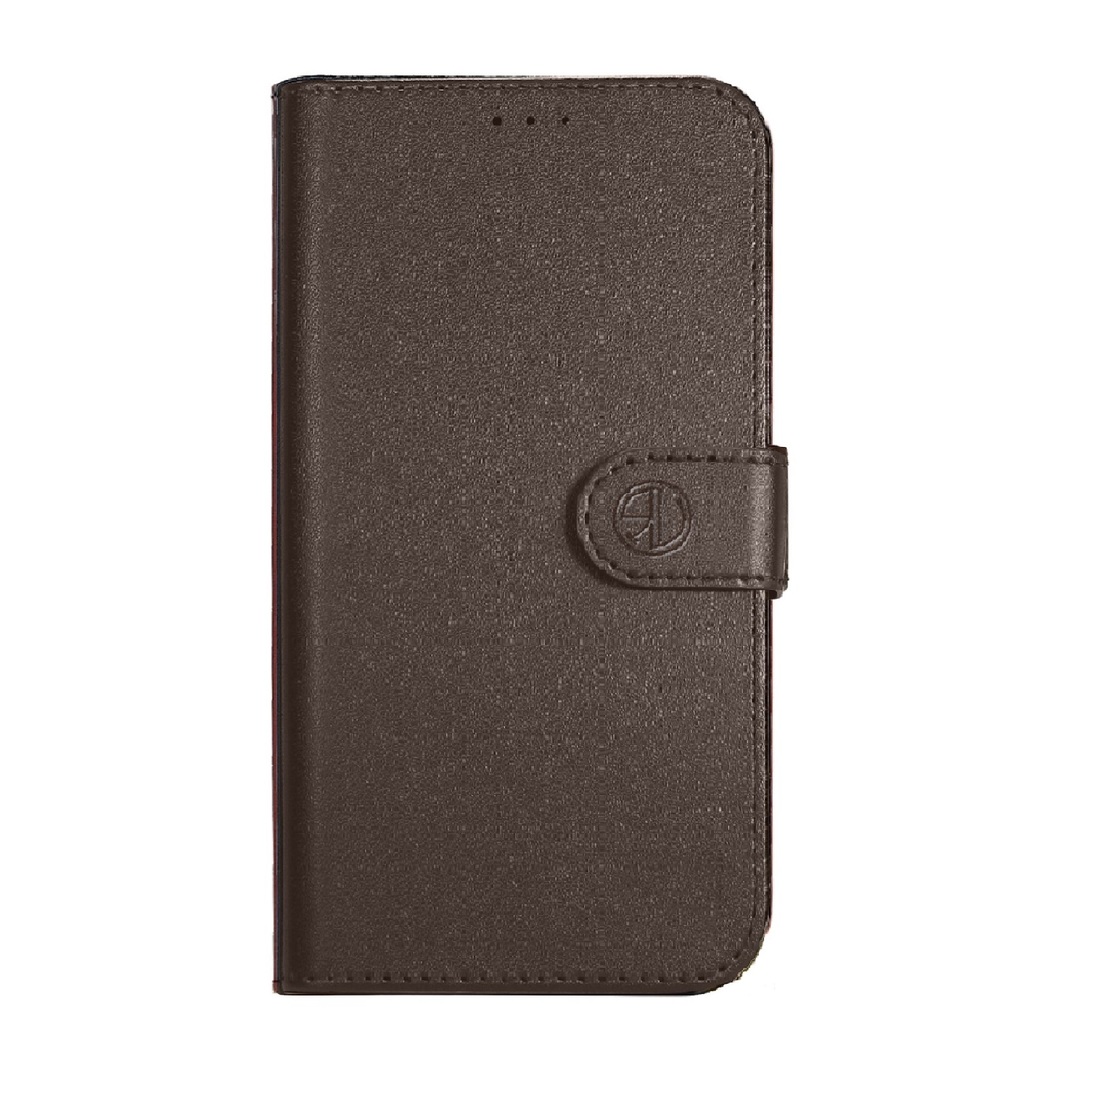 Super Wallet Case iPhone 5G/5S/ SE dark brown